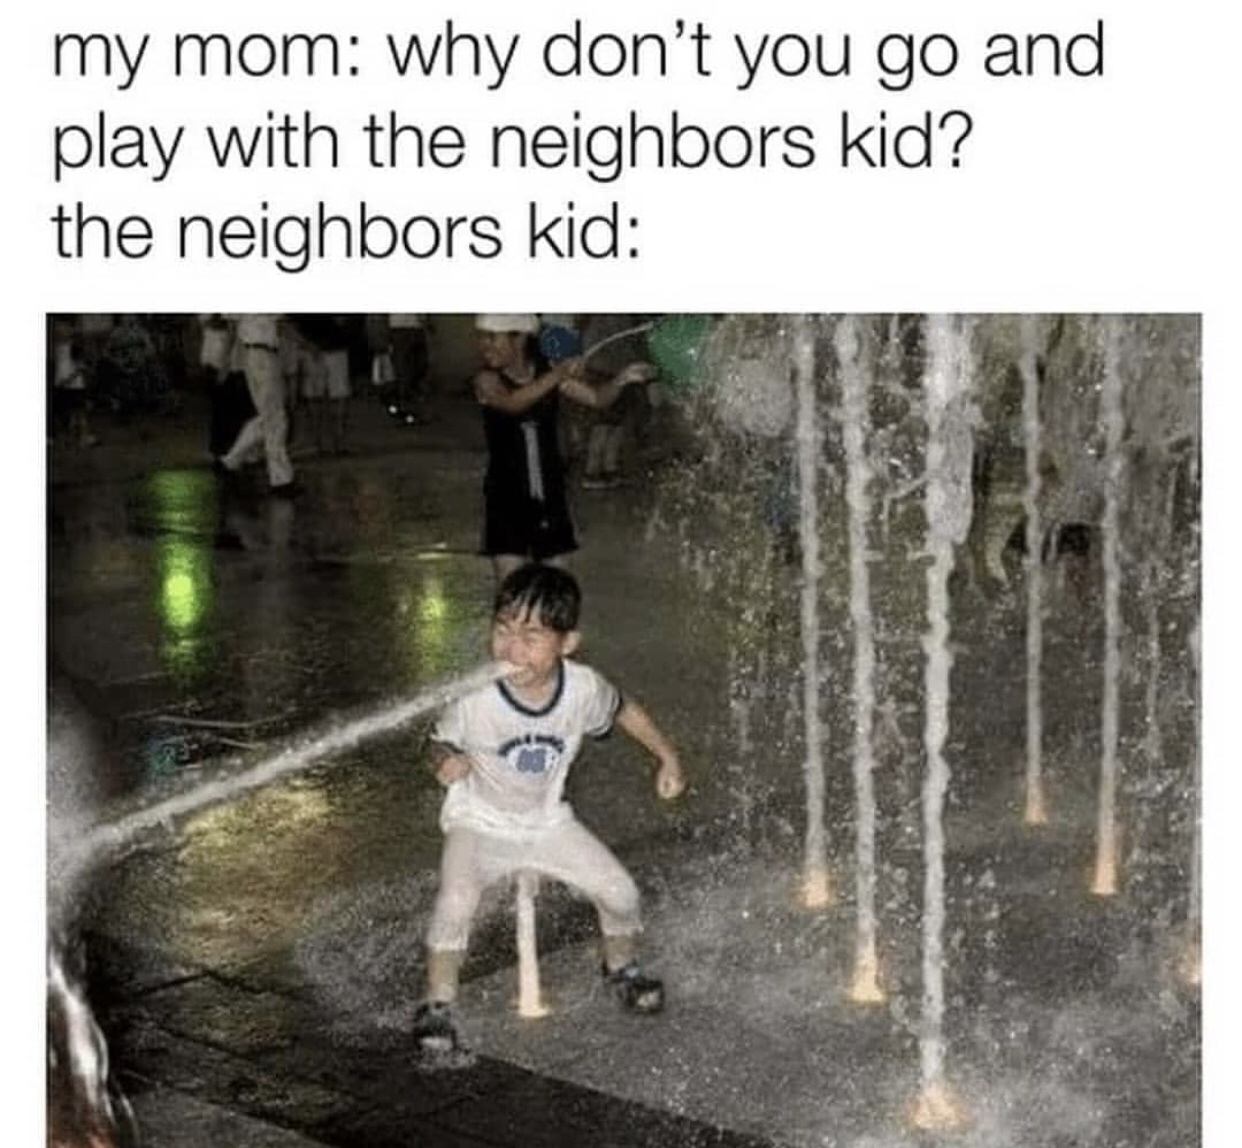 don t you go play - my mom why don't you go and play with the neighbors kid? the neighbors kid